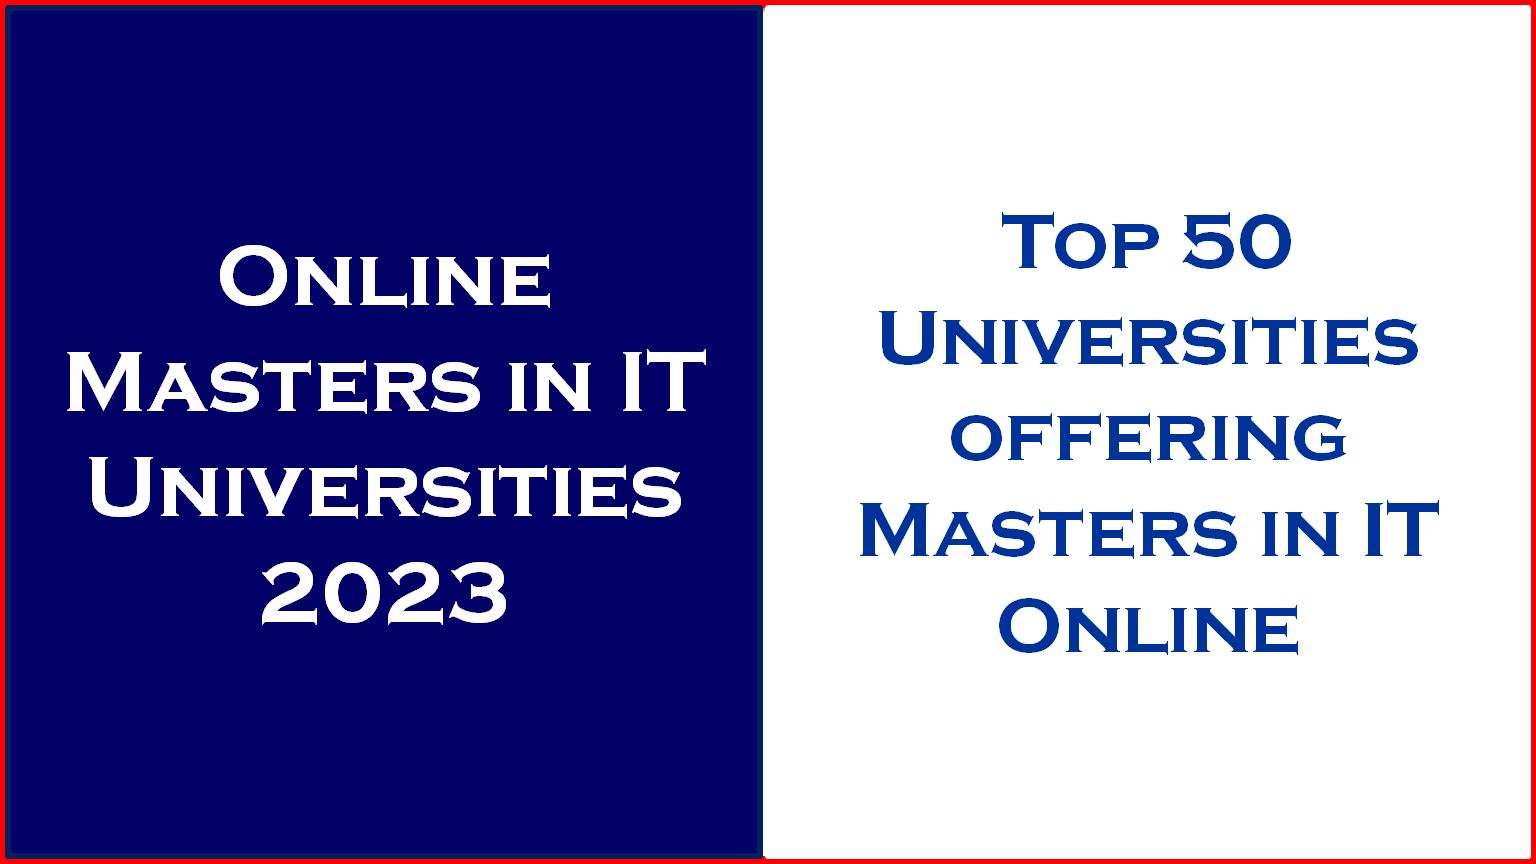 Online Masters in IT programs